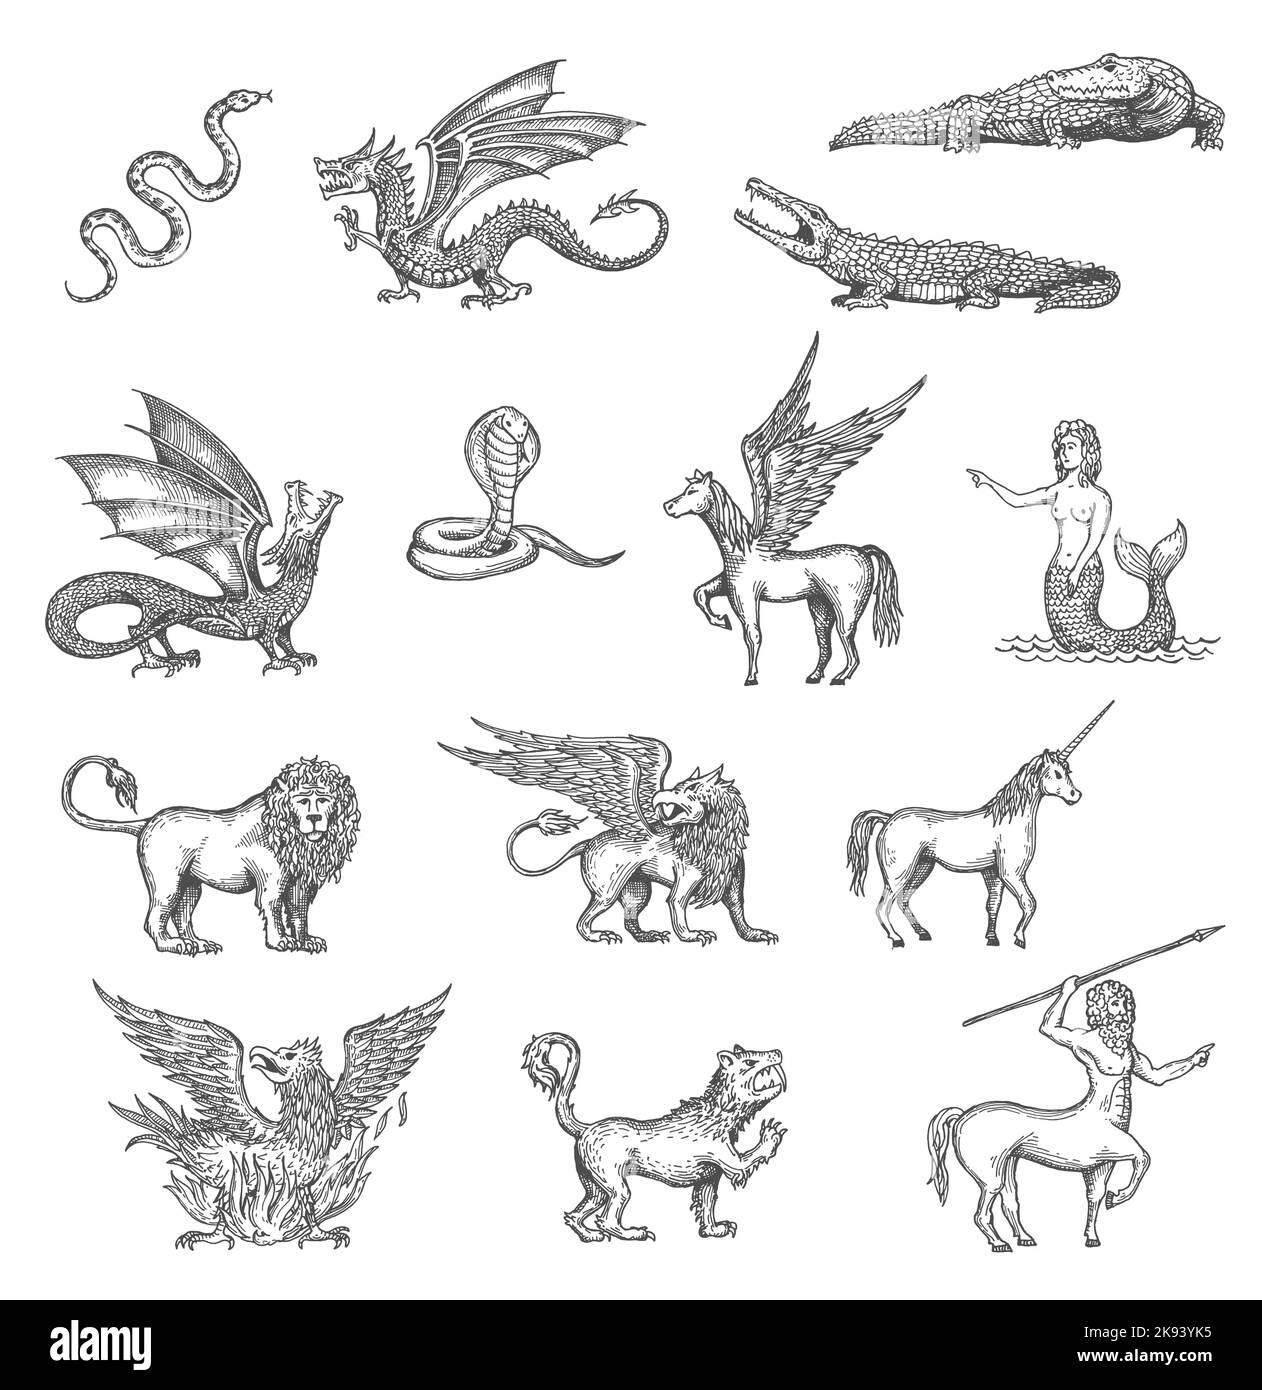 Licorne, phoenix, dragon et Pegasus, minotaur ou lion mermaid animal vector sketch. Crocodile, serpent, griffin et loup-garou, gryphon et centaure en esquisse, créatures fantastiques de la mythologie Illustration de Vecteur